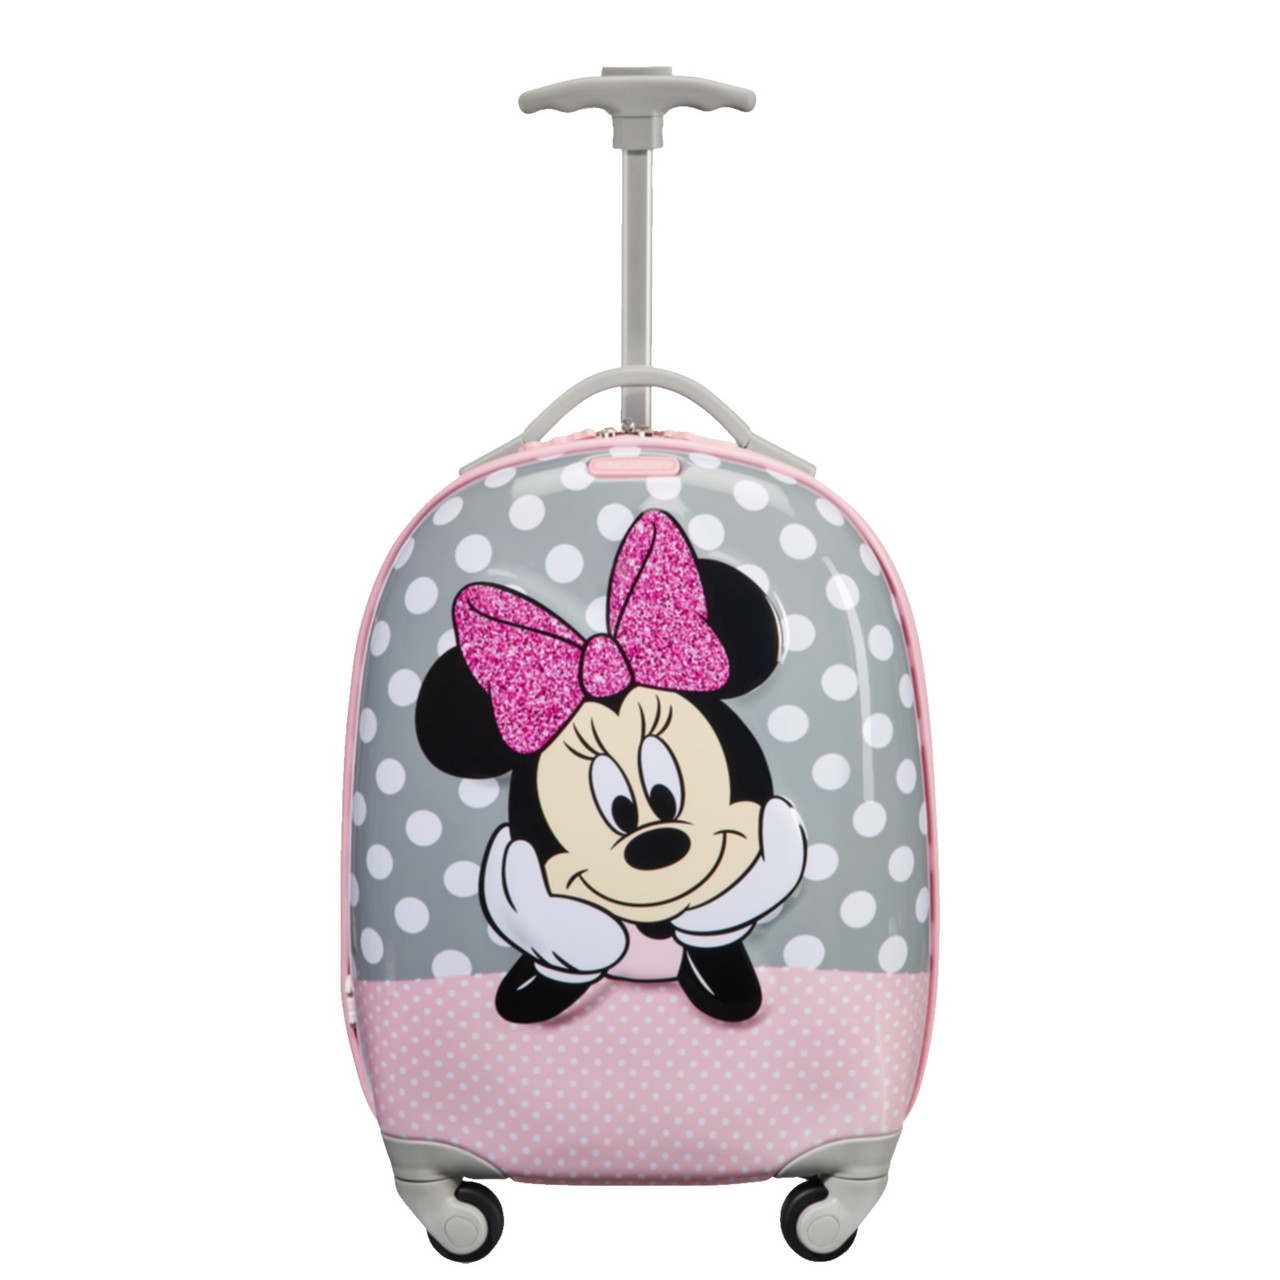 Samsonite Disney Ultimate 2.0 Children\'s Suitcase at Luggage Superstore